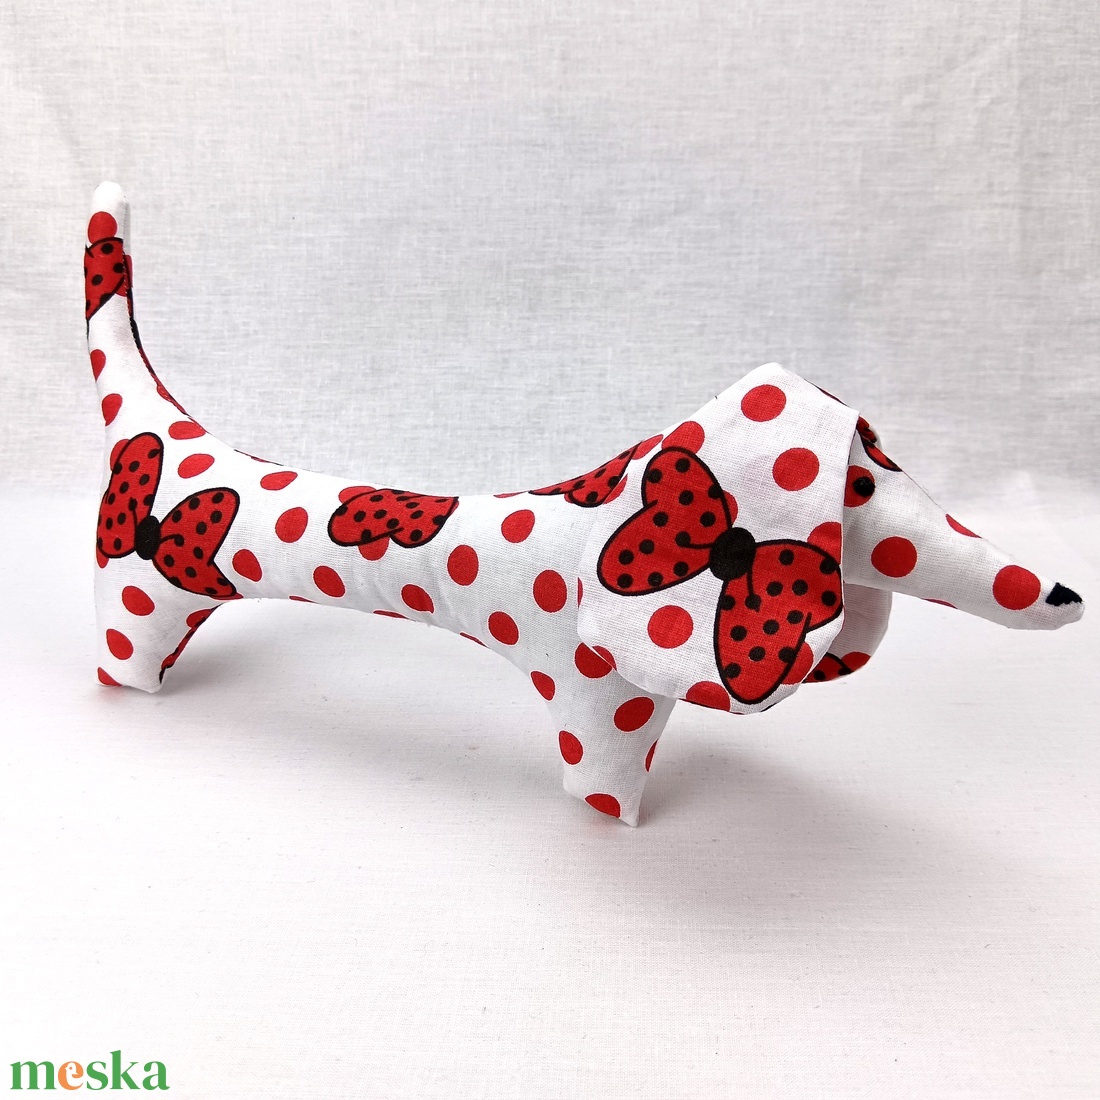 Tacskó - mintás egyedi tervezésű kézműves játék - textiljáték - tacsi kutya - gyerek játék - játék & sport - plüssállat & játékfigura - kutya - Meska.hu